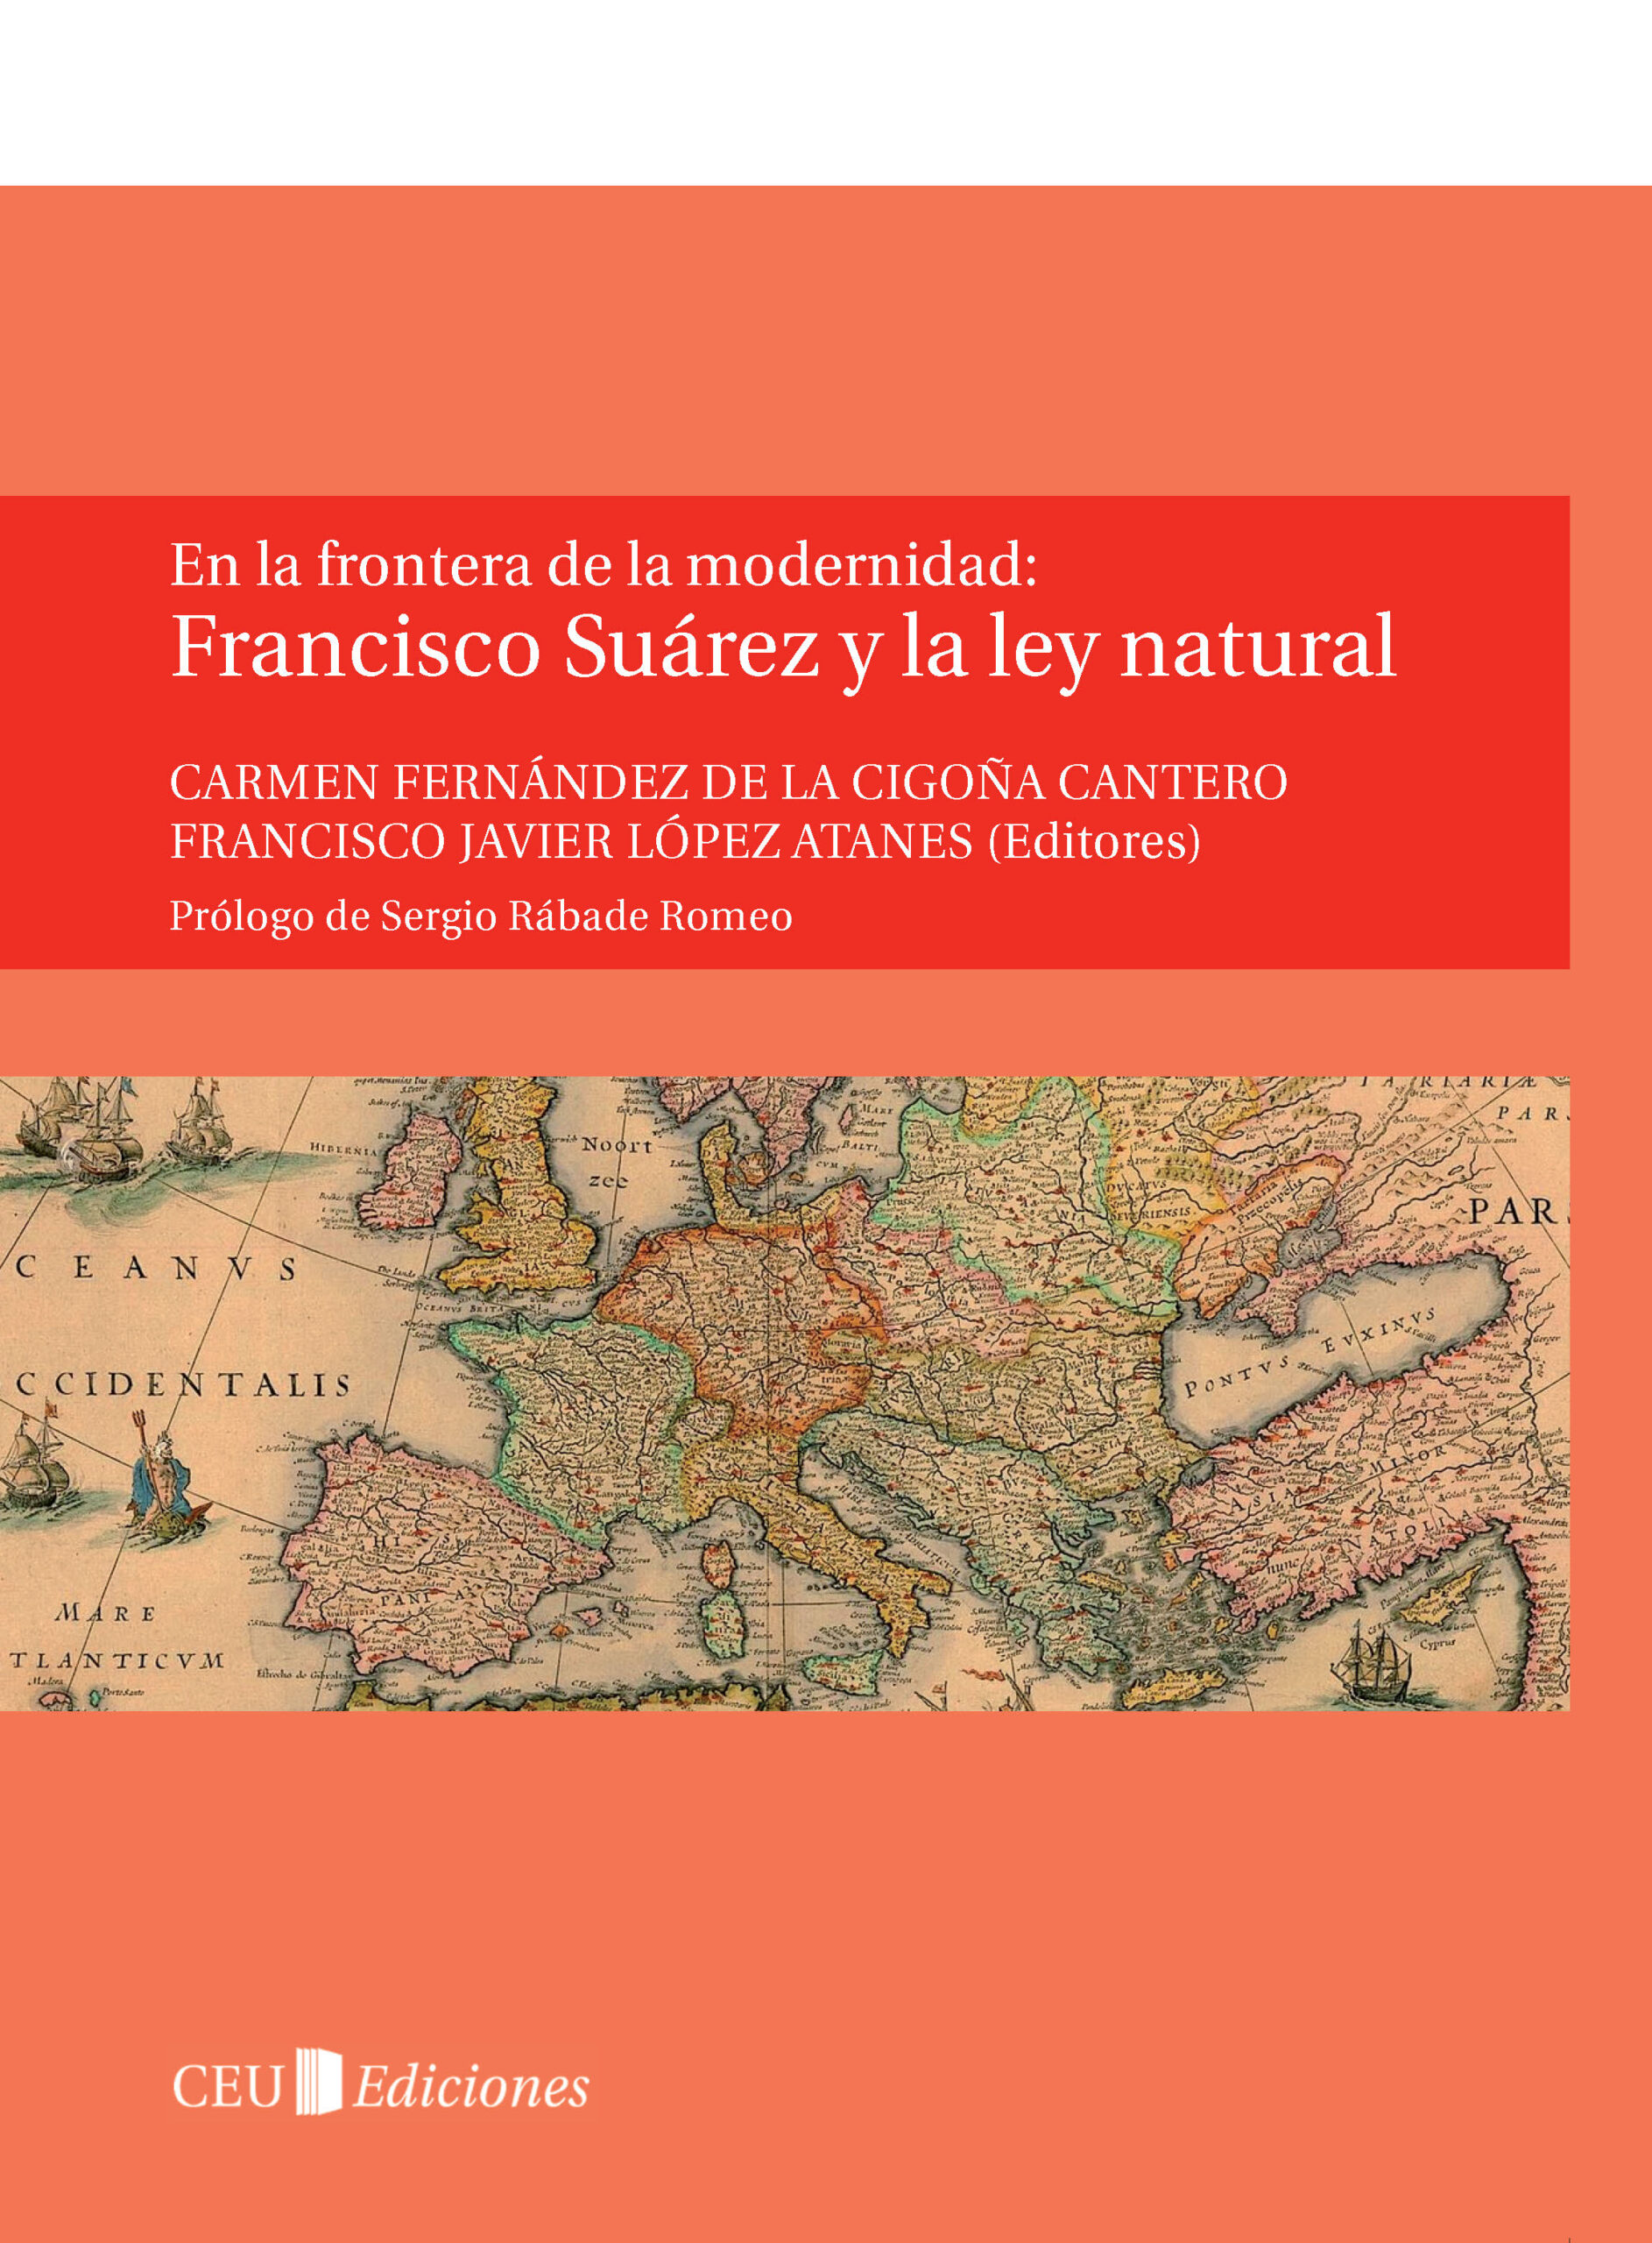 Imagen de portada del libro Francisco Suárez y la ley natural